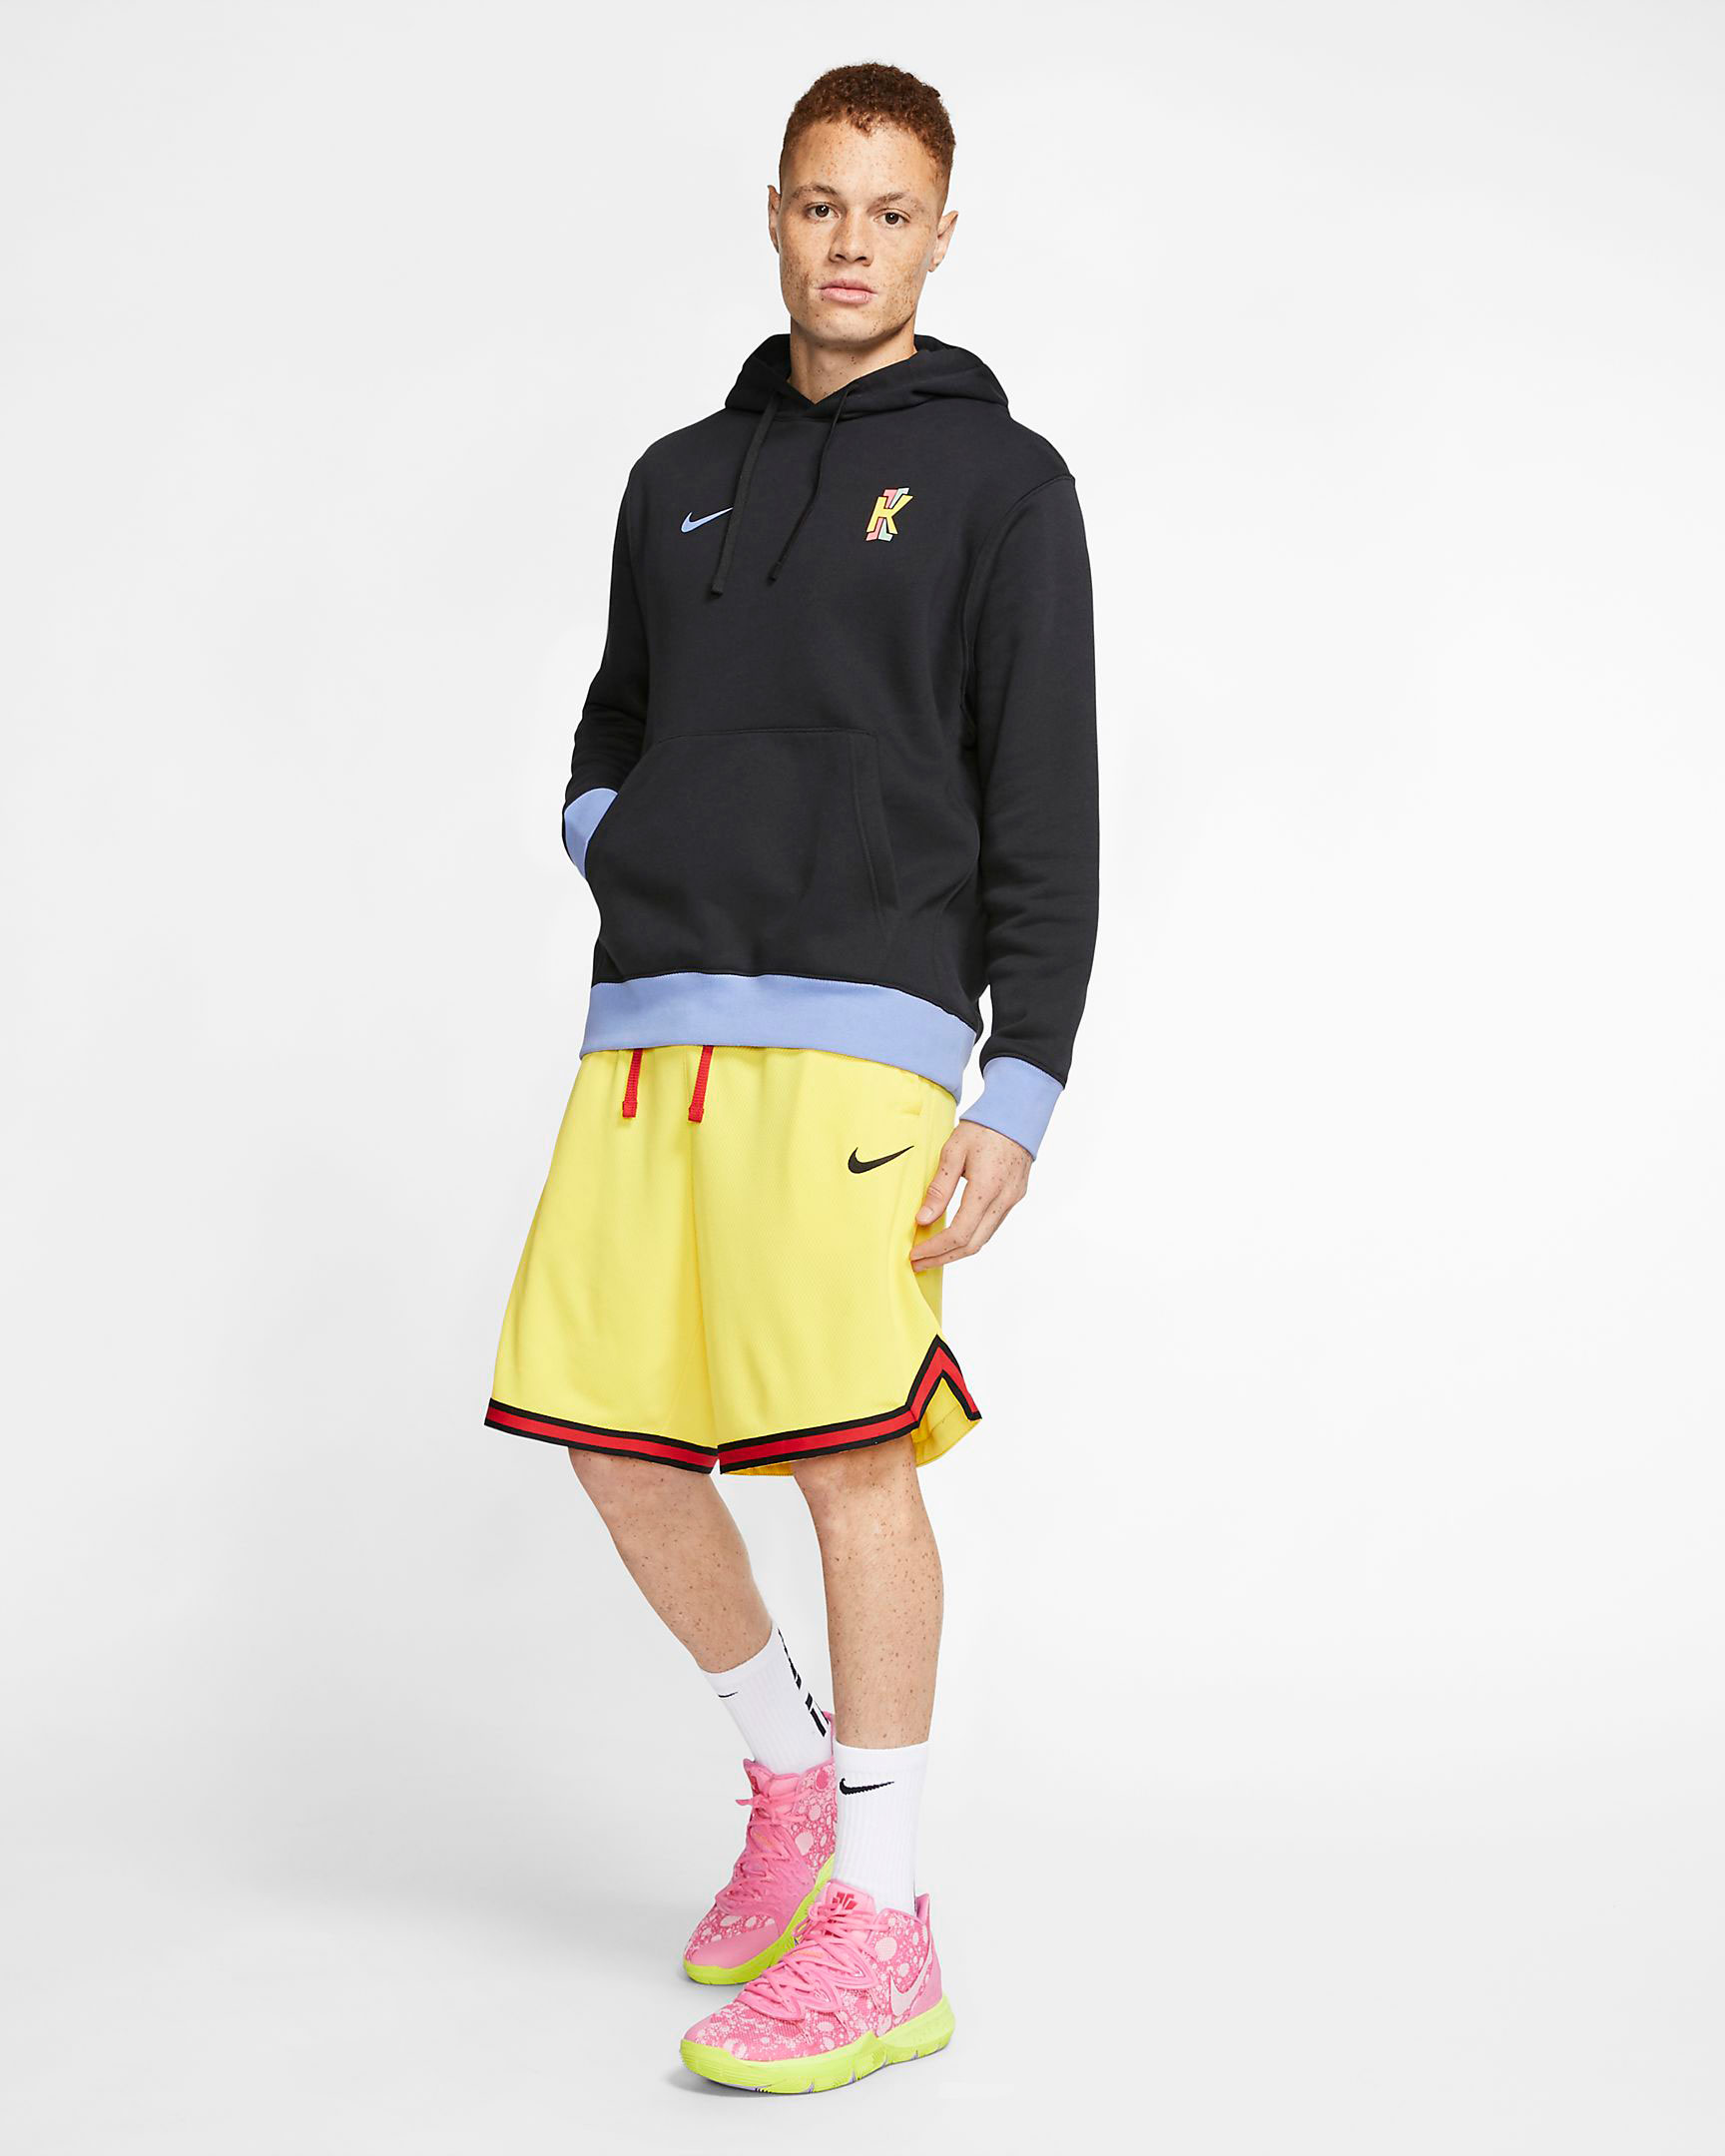 spongebob pineapple hoodie